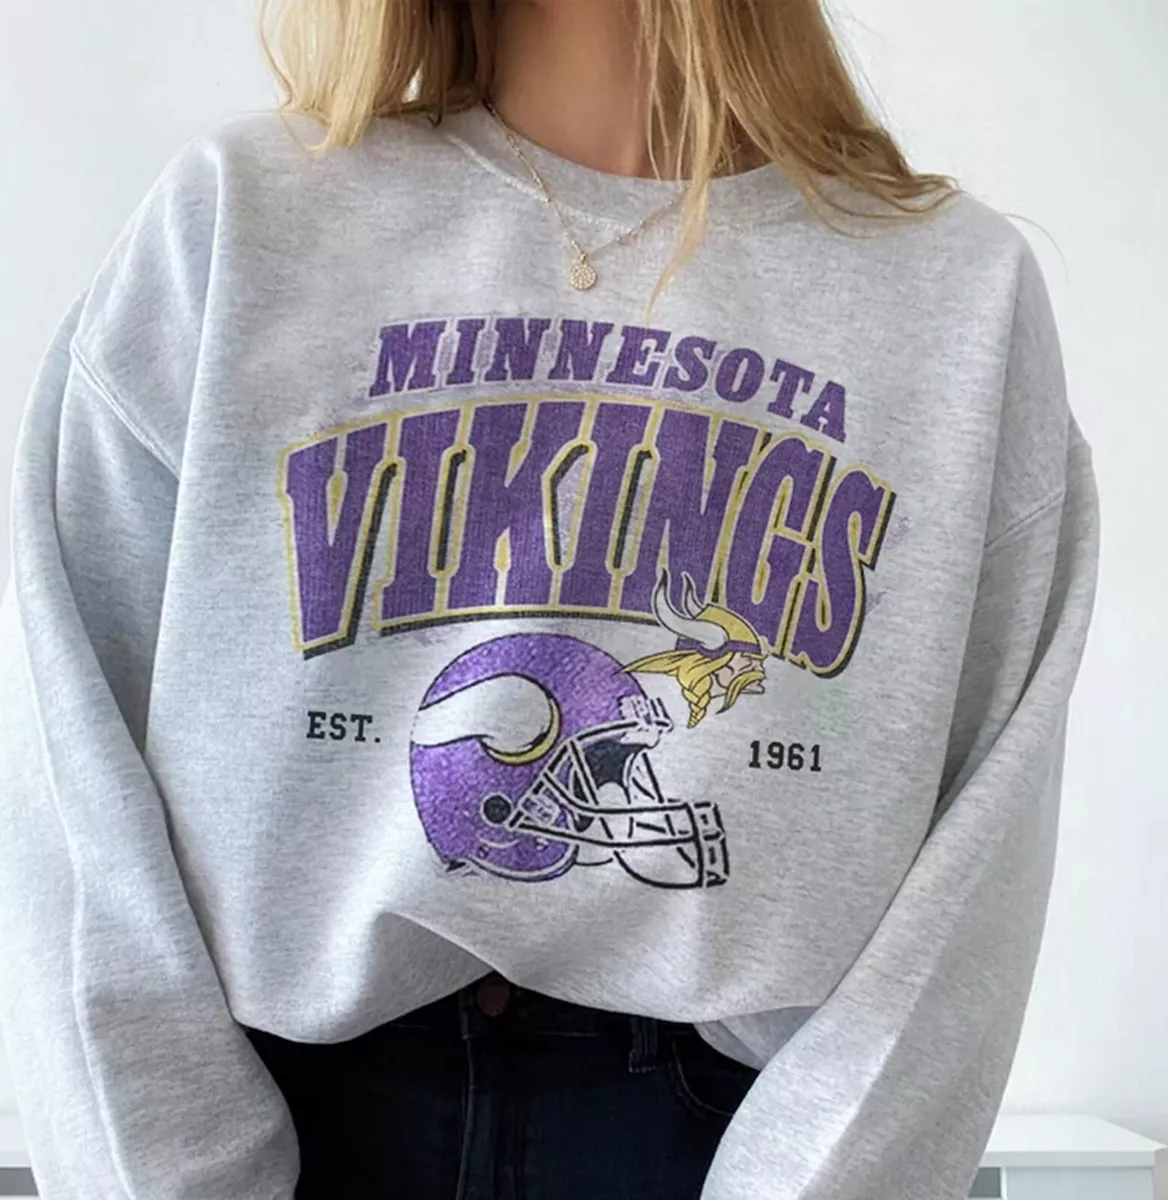 Minnesota Vikings Vintage Sweatshirt, Vintage Vikings Football Shirt, Retro